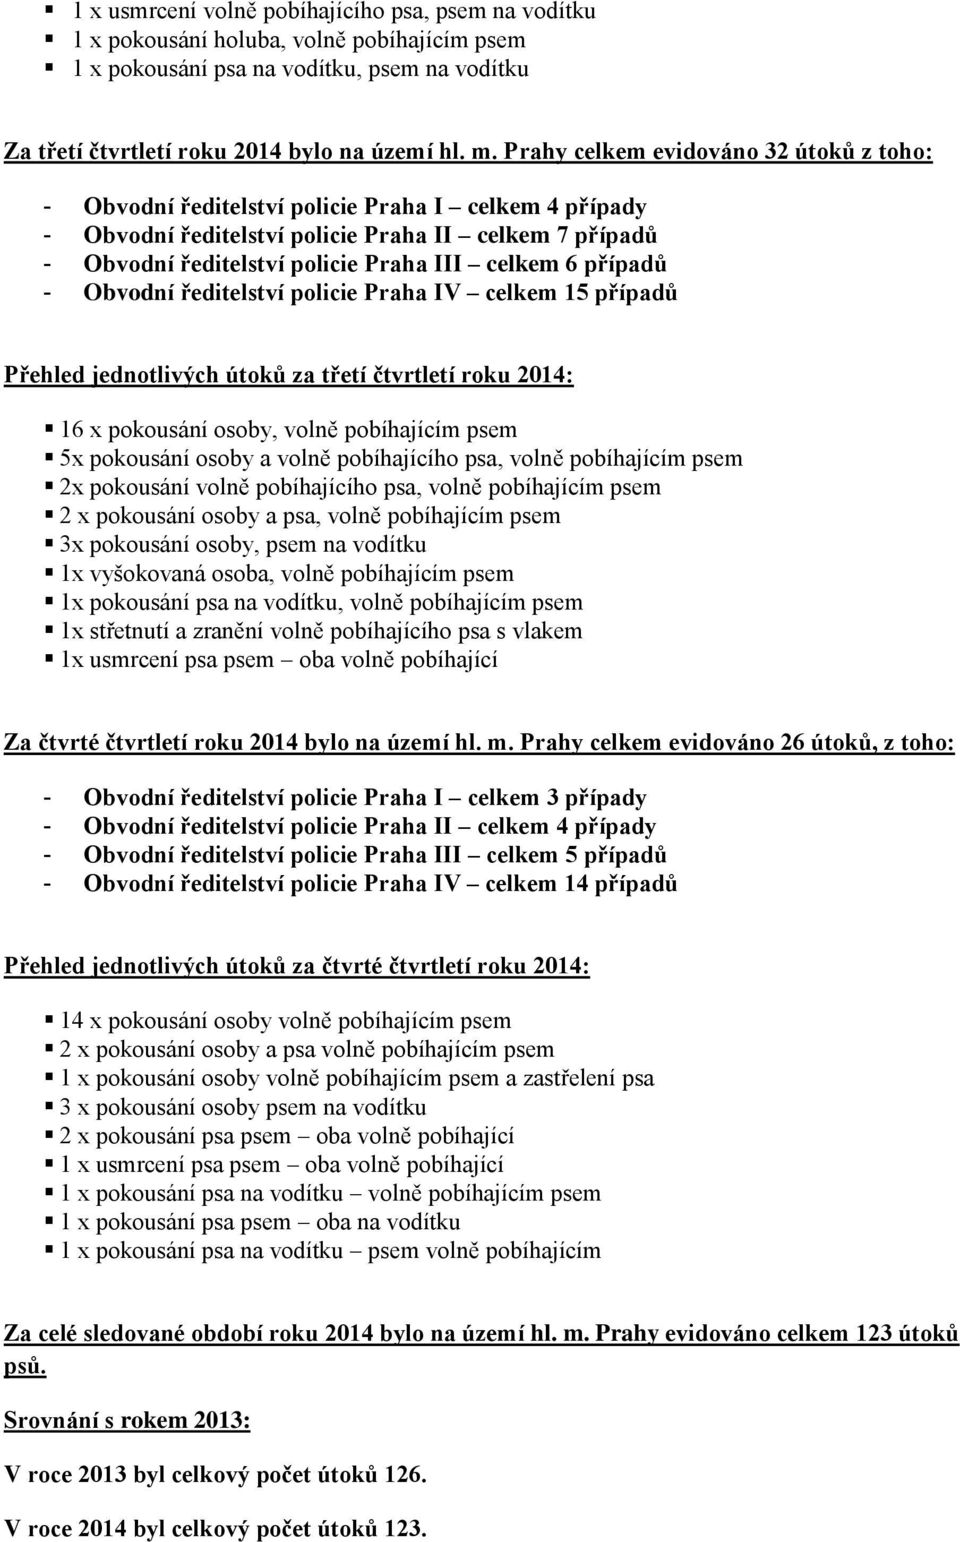 případů - Obvodní ředitelství policie Praha IV celkem 15 případů Přehled jednotlivých útoků za třetí čtvrtletí roku 2014: 16 x pokousání osoby, volně pobíhajícím psem 5x pokousání osoby a volně